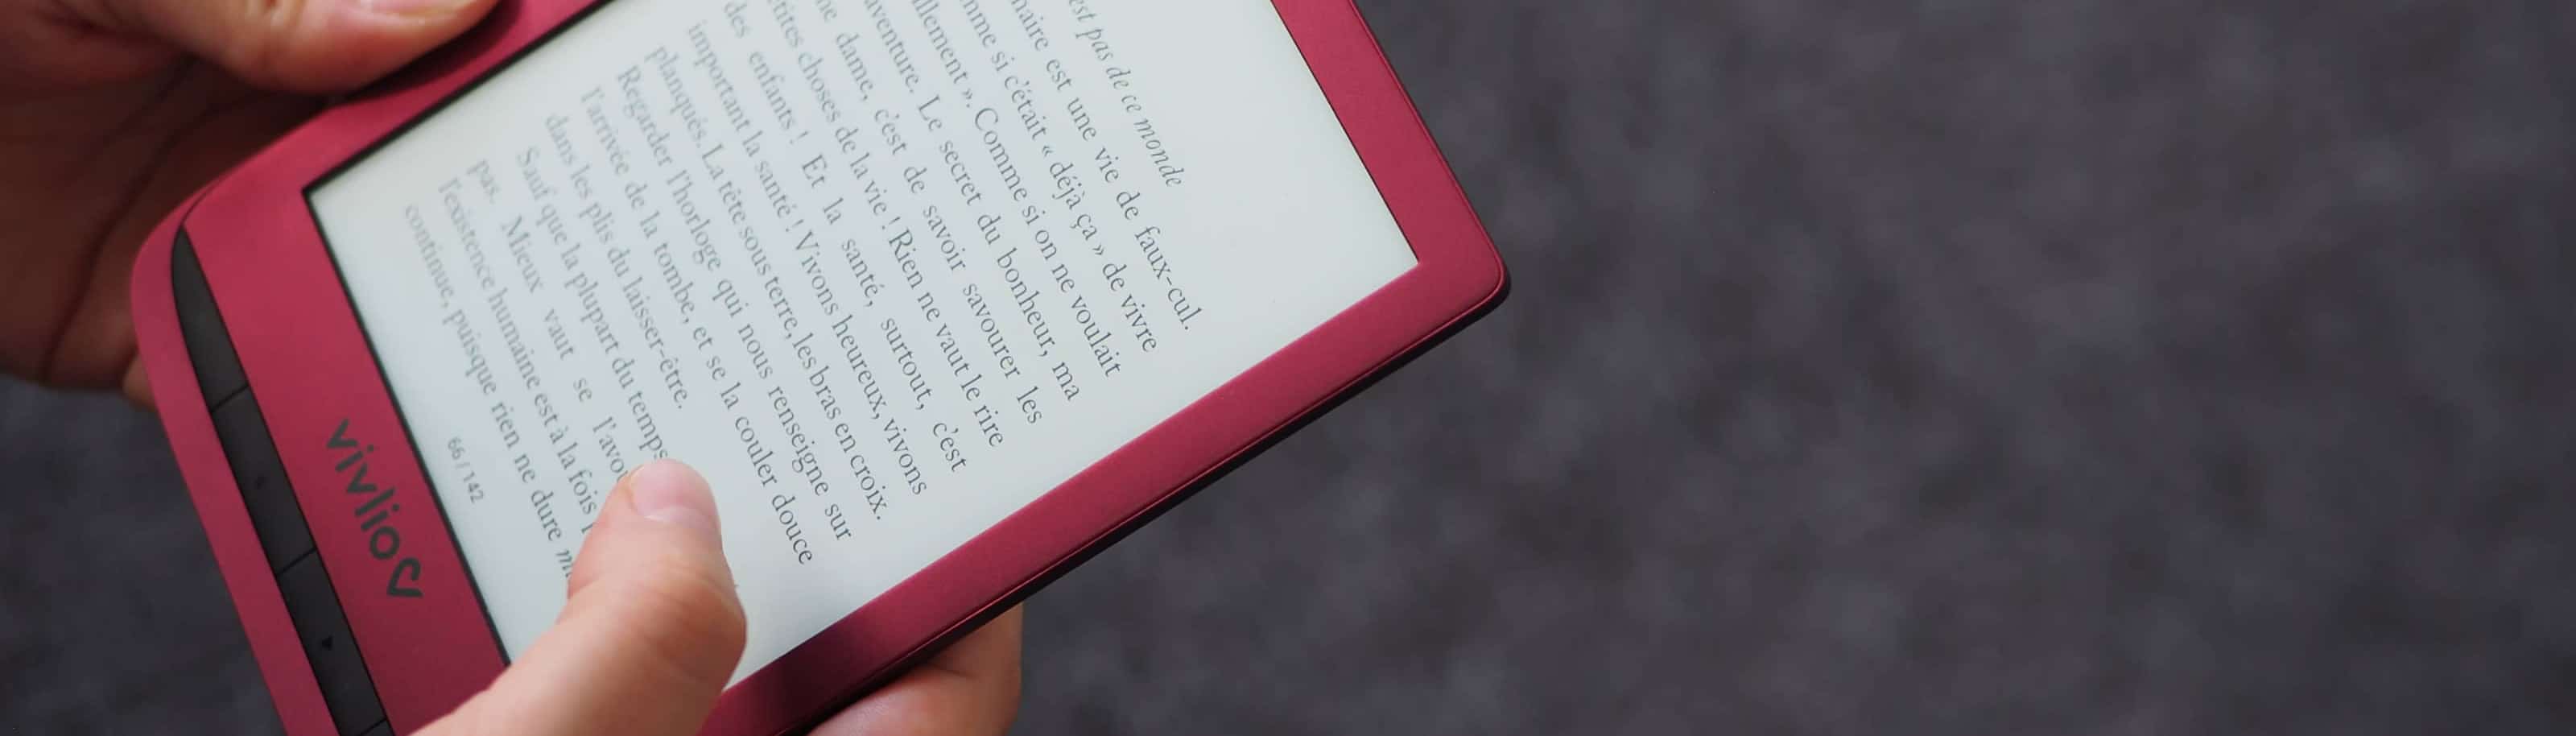 VIVLIO Liseuse eBook 3 en 1 Anne de Green Gables-Touch Lux 5 pas cher 